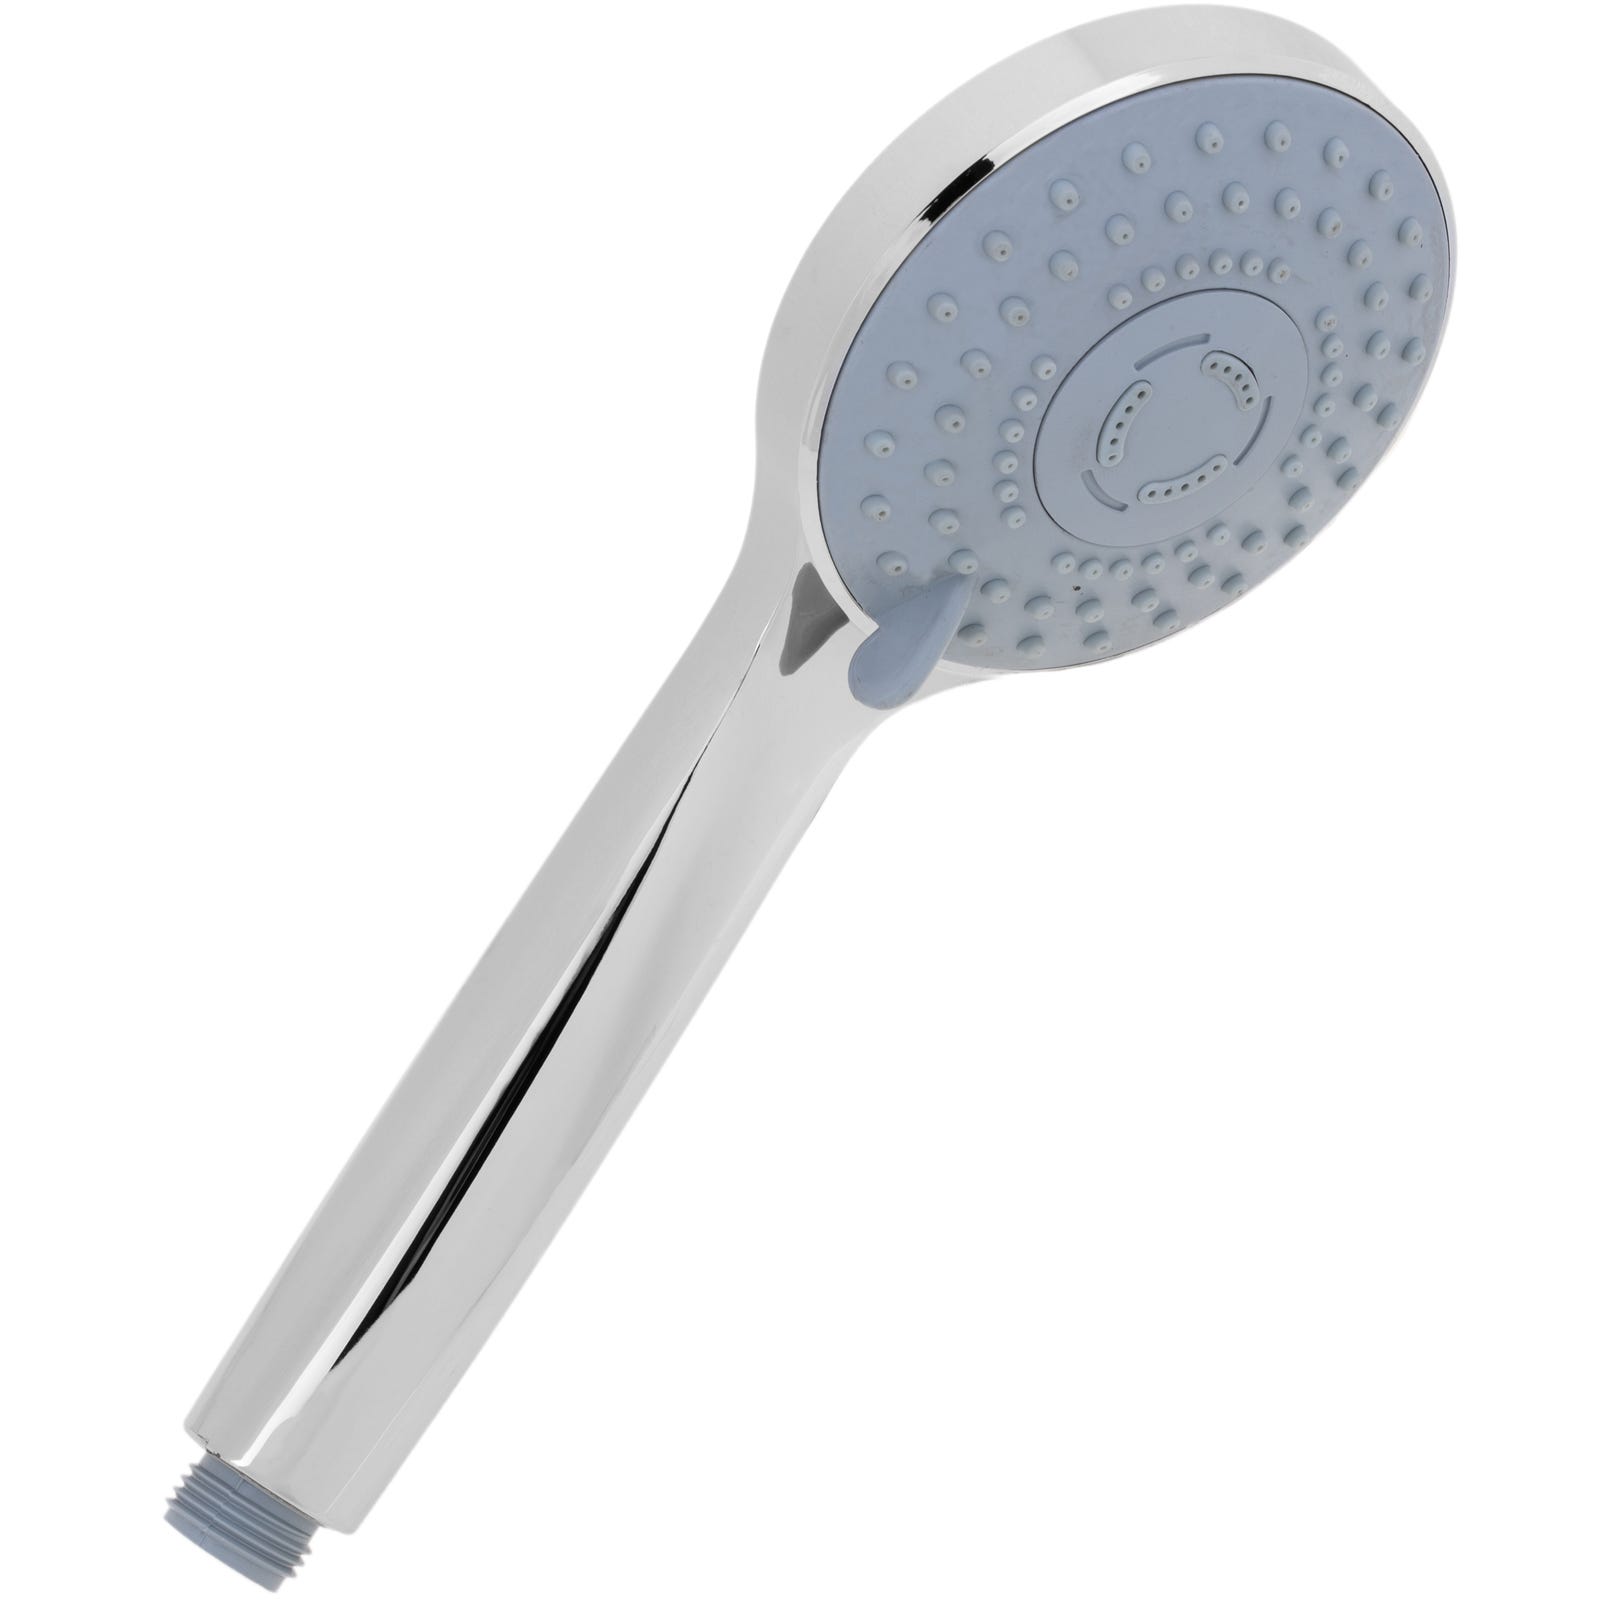 Alcachofa móvil 242mm para ducha cromado con sistema antical, ahorro de  agua y 3 funciones